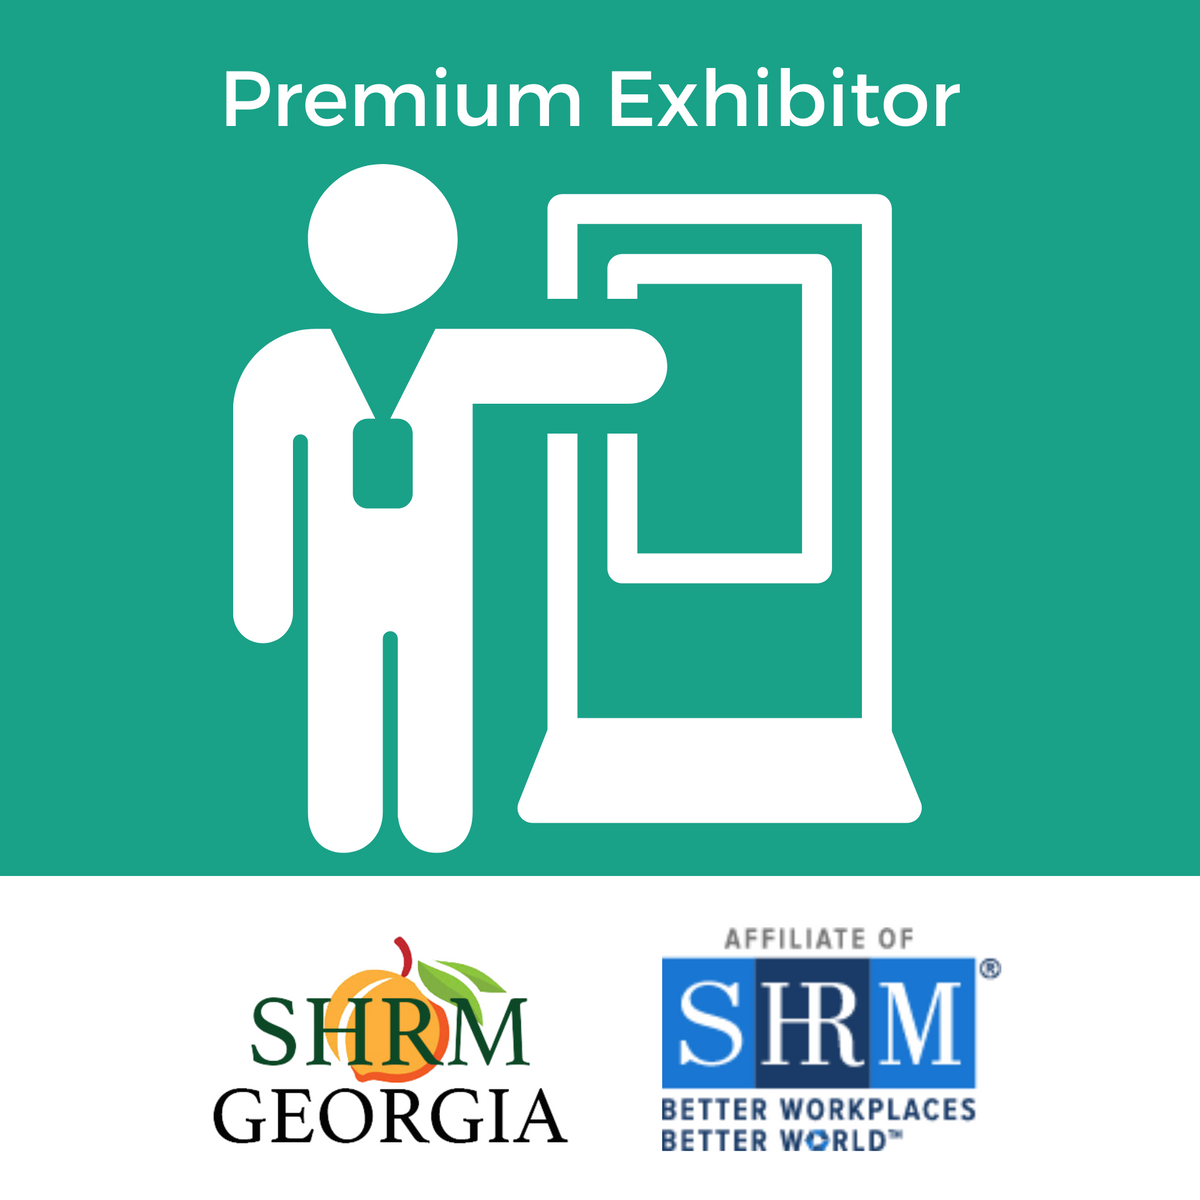 23 GA SHRM Annual - Premium Exhibitor